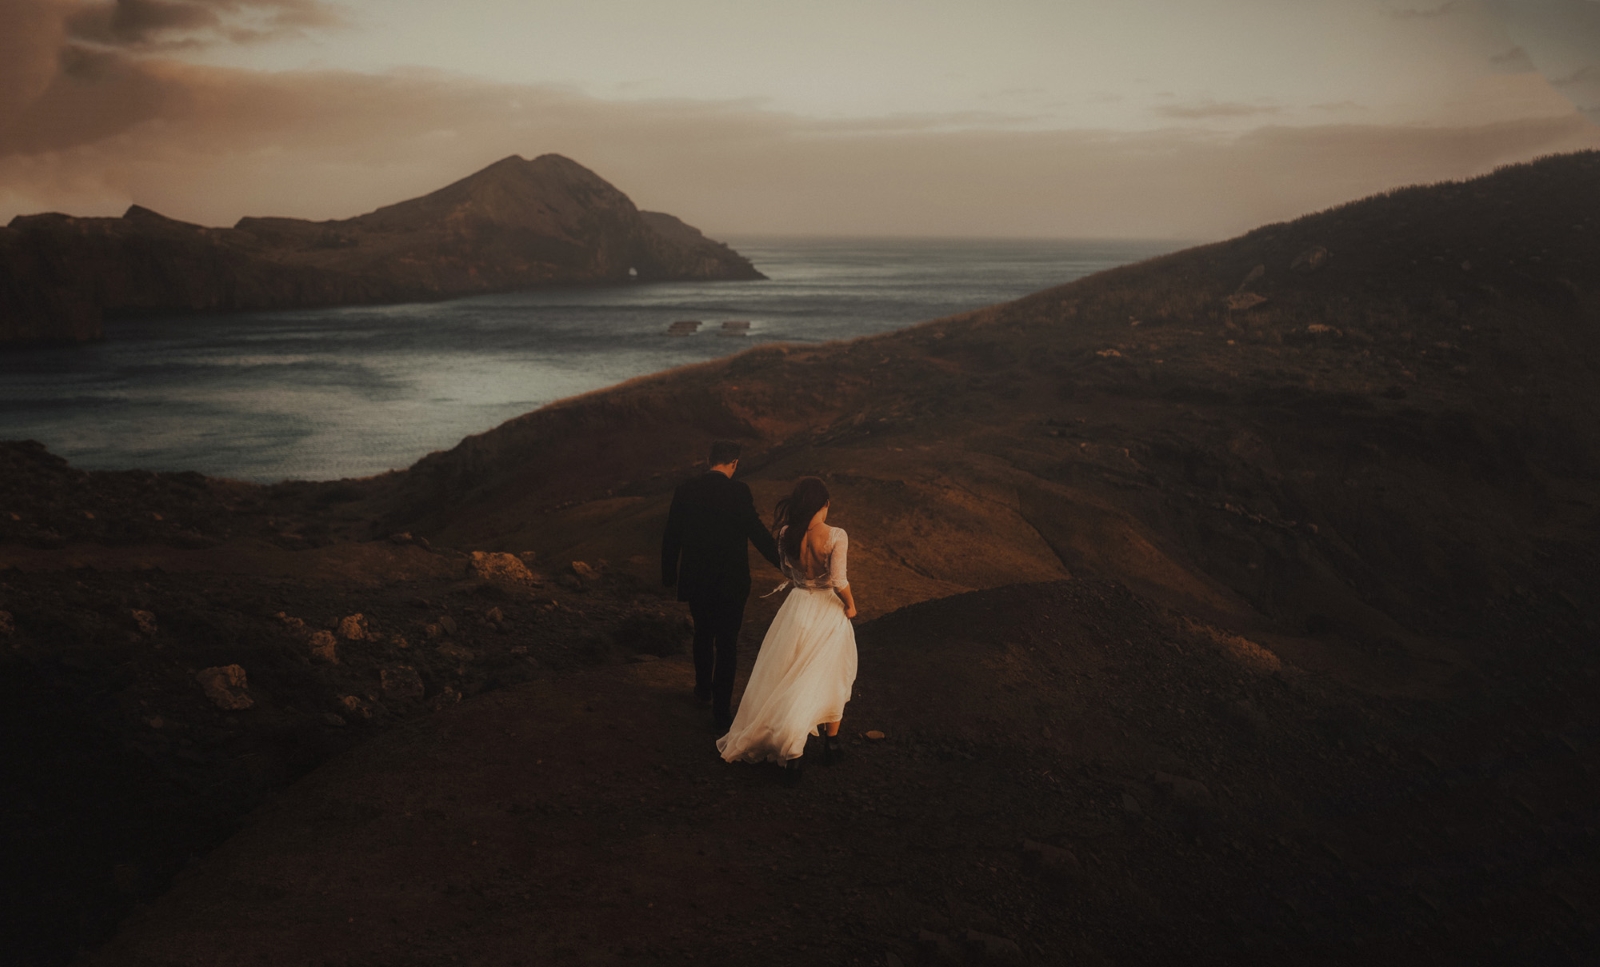 Рафал Бояр е полски сватбен фотограф, който има една основна цел: не просто да снима сватбата, а да разкаже една любовна история.